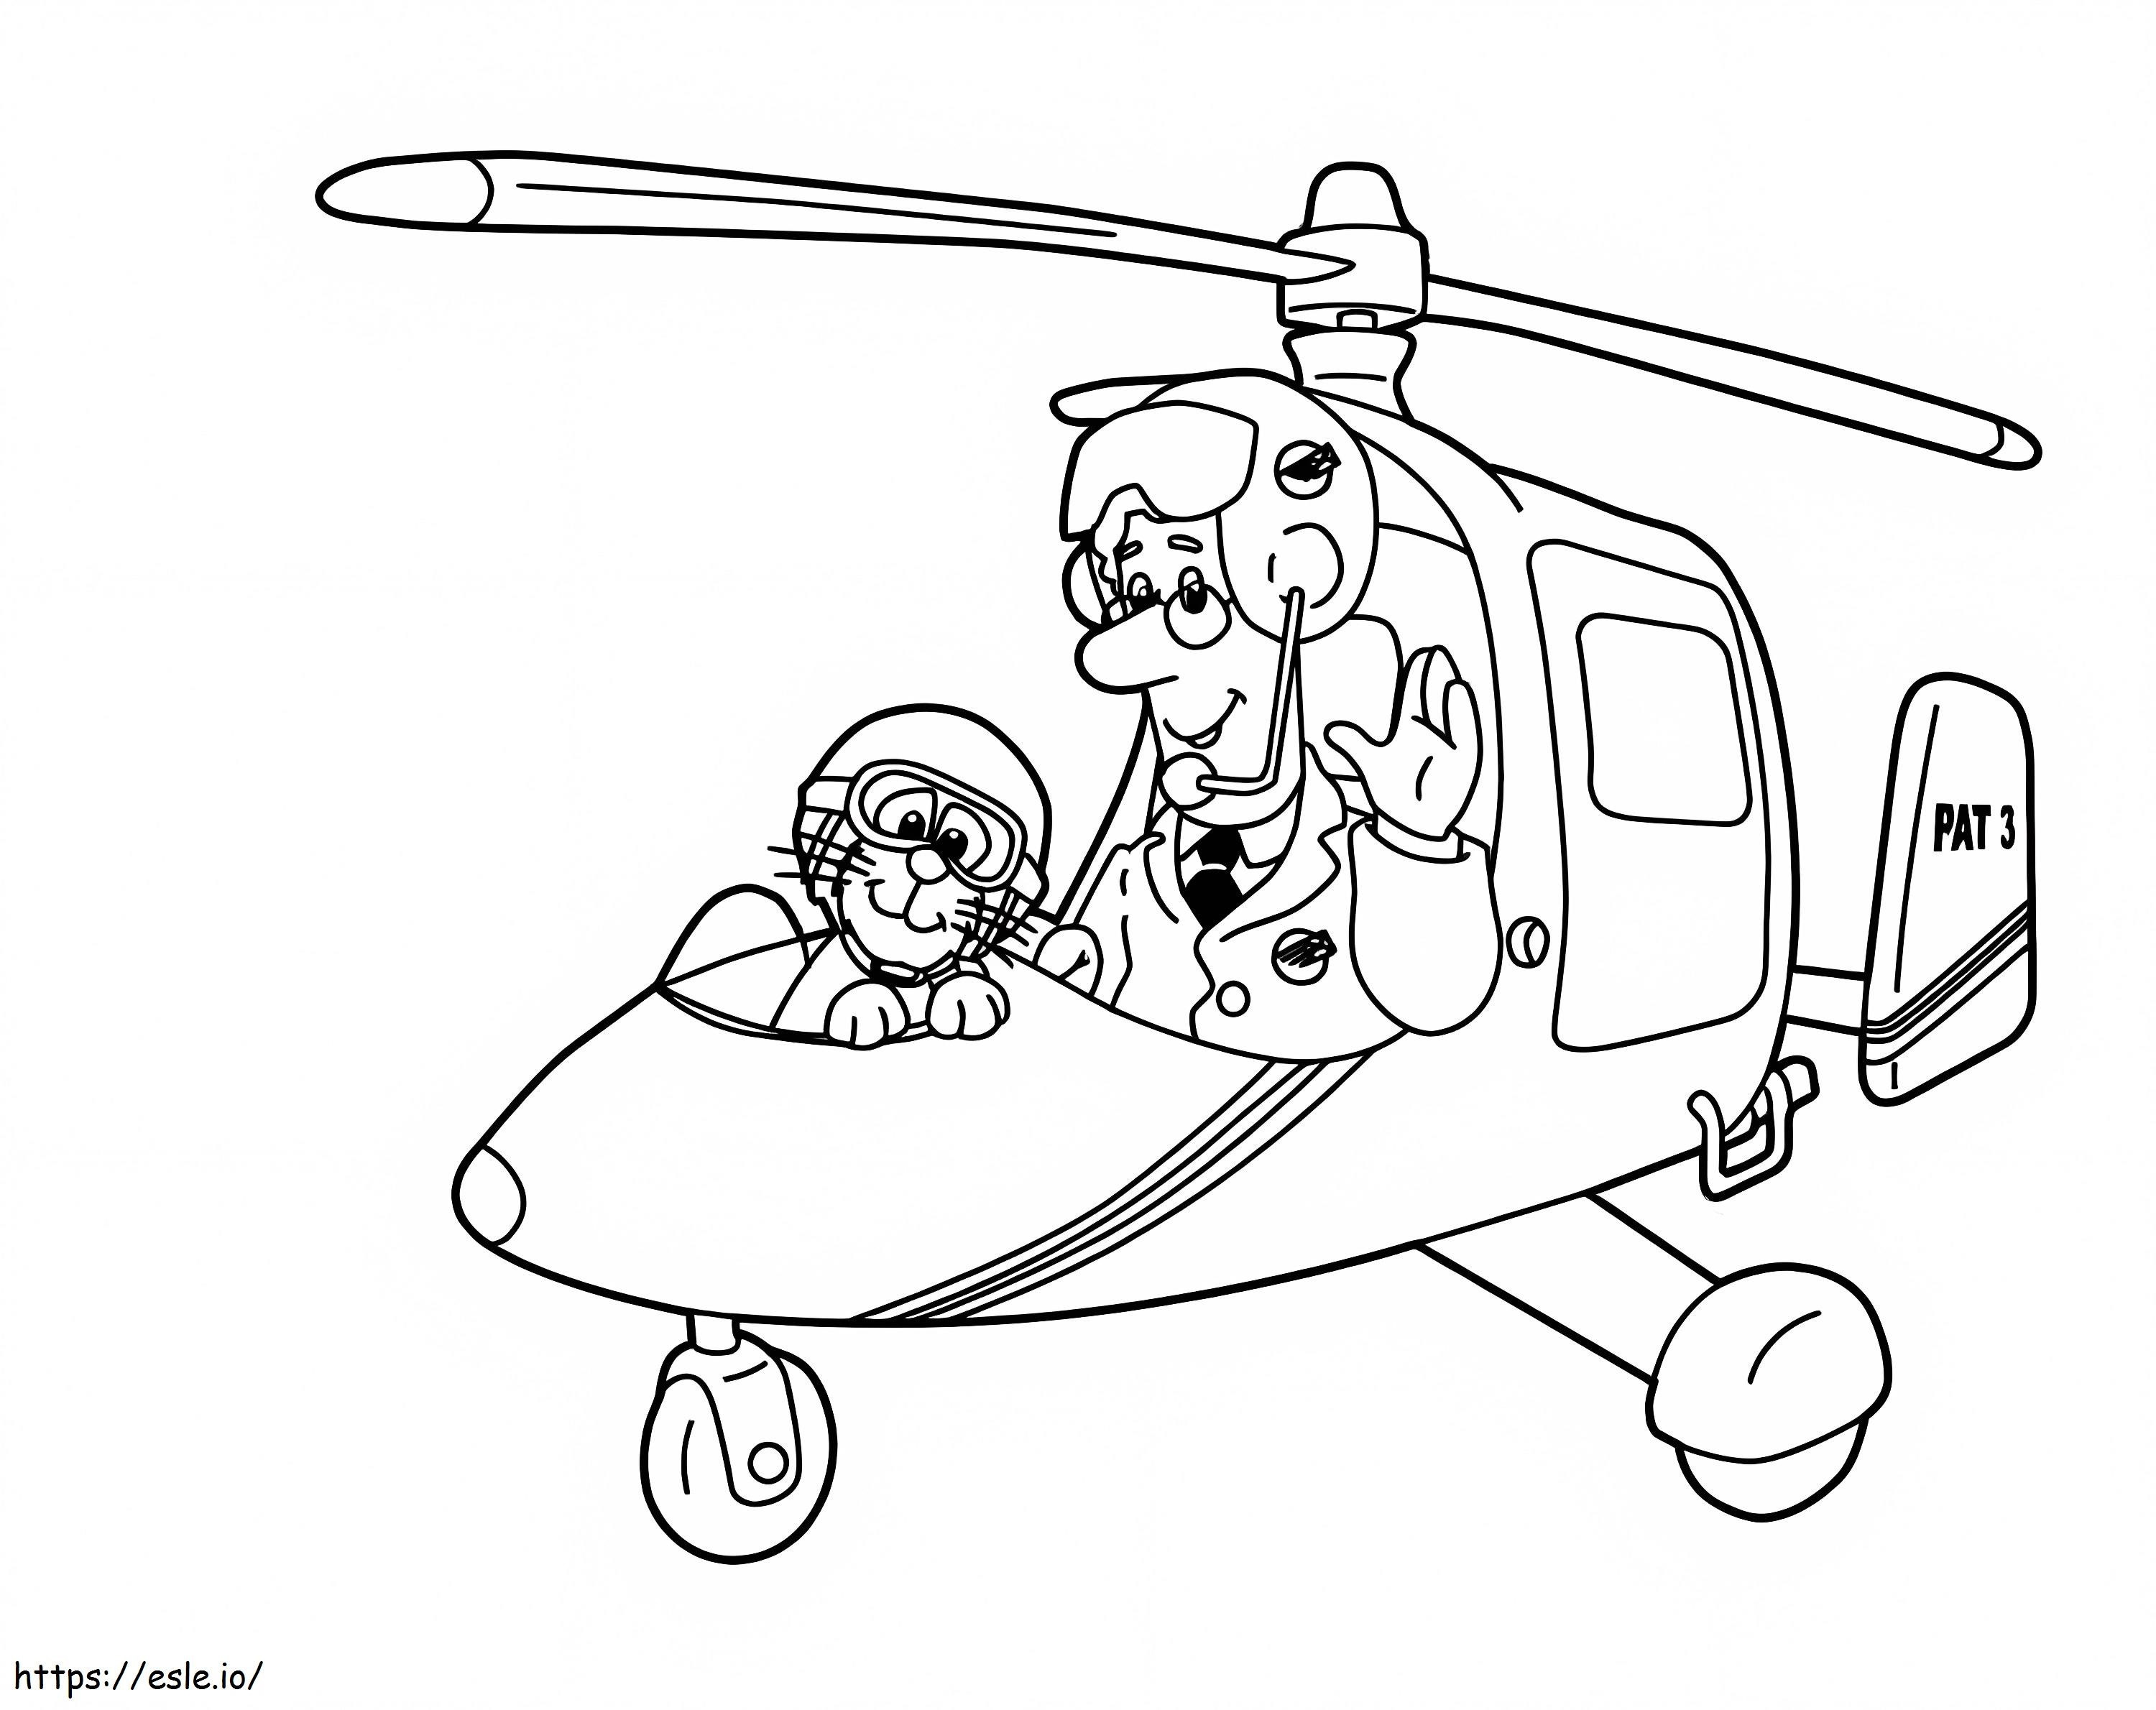 Postbote Pat und seine Katze im Hubschrauber ausmalbilder